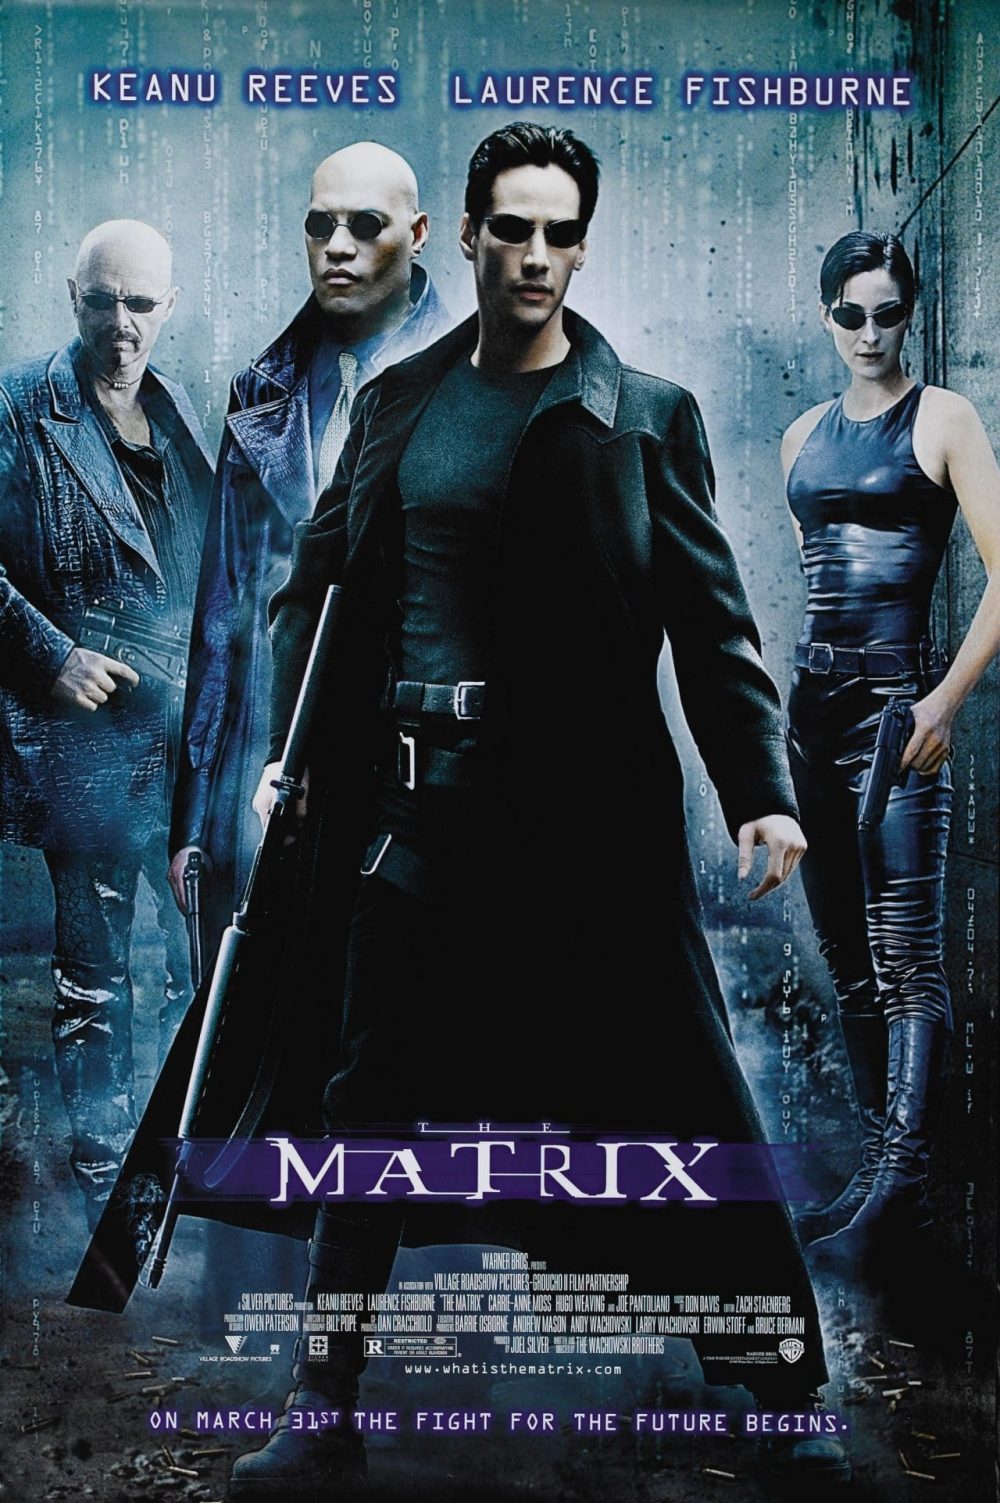 the matrix e1592041935657 - The Matrix và tác phẩm khoa học viễn tưởng xuất sắc nhất mọi thời đại